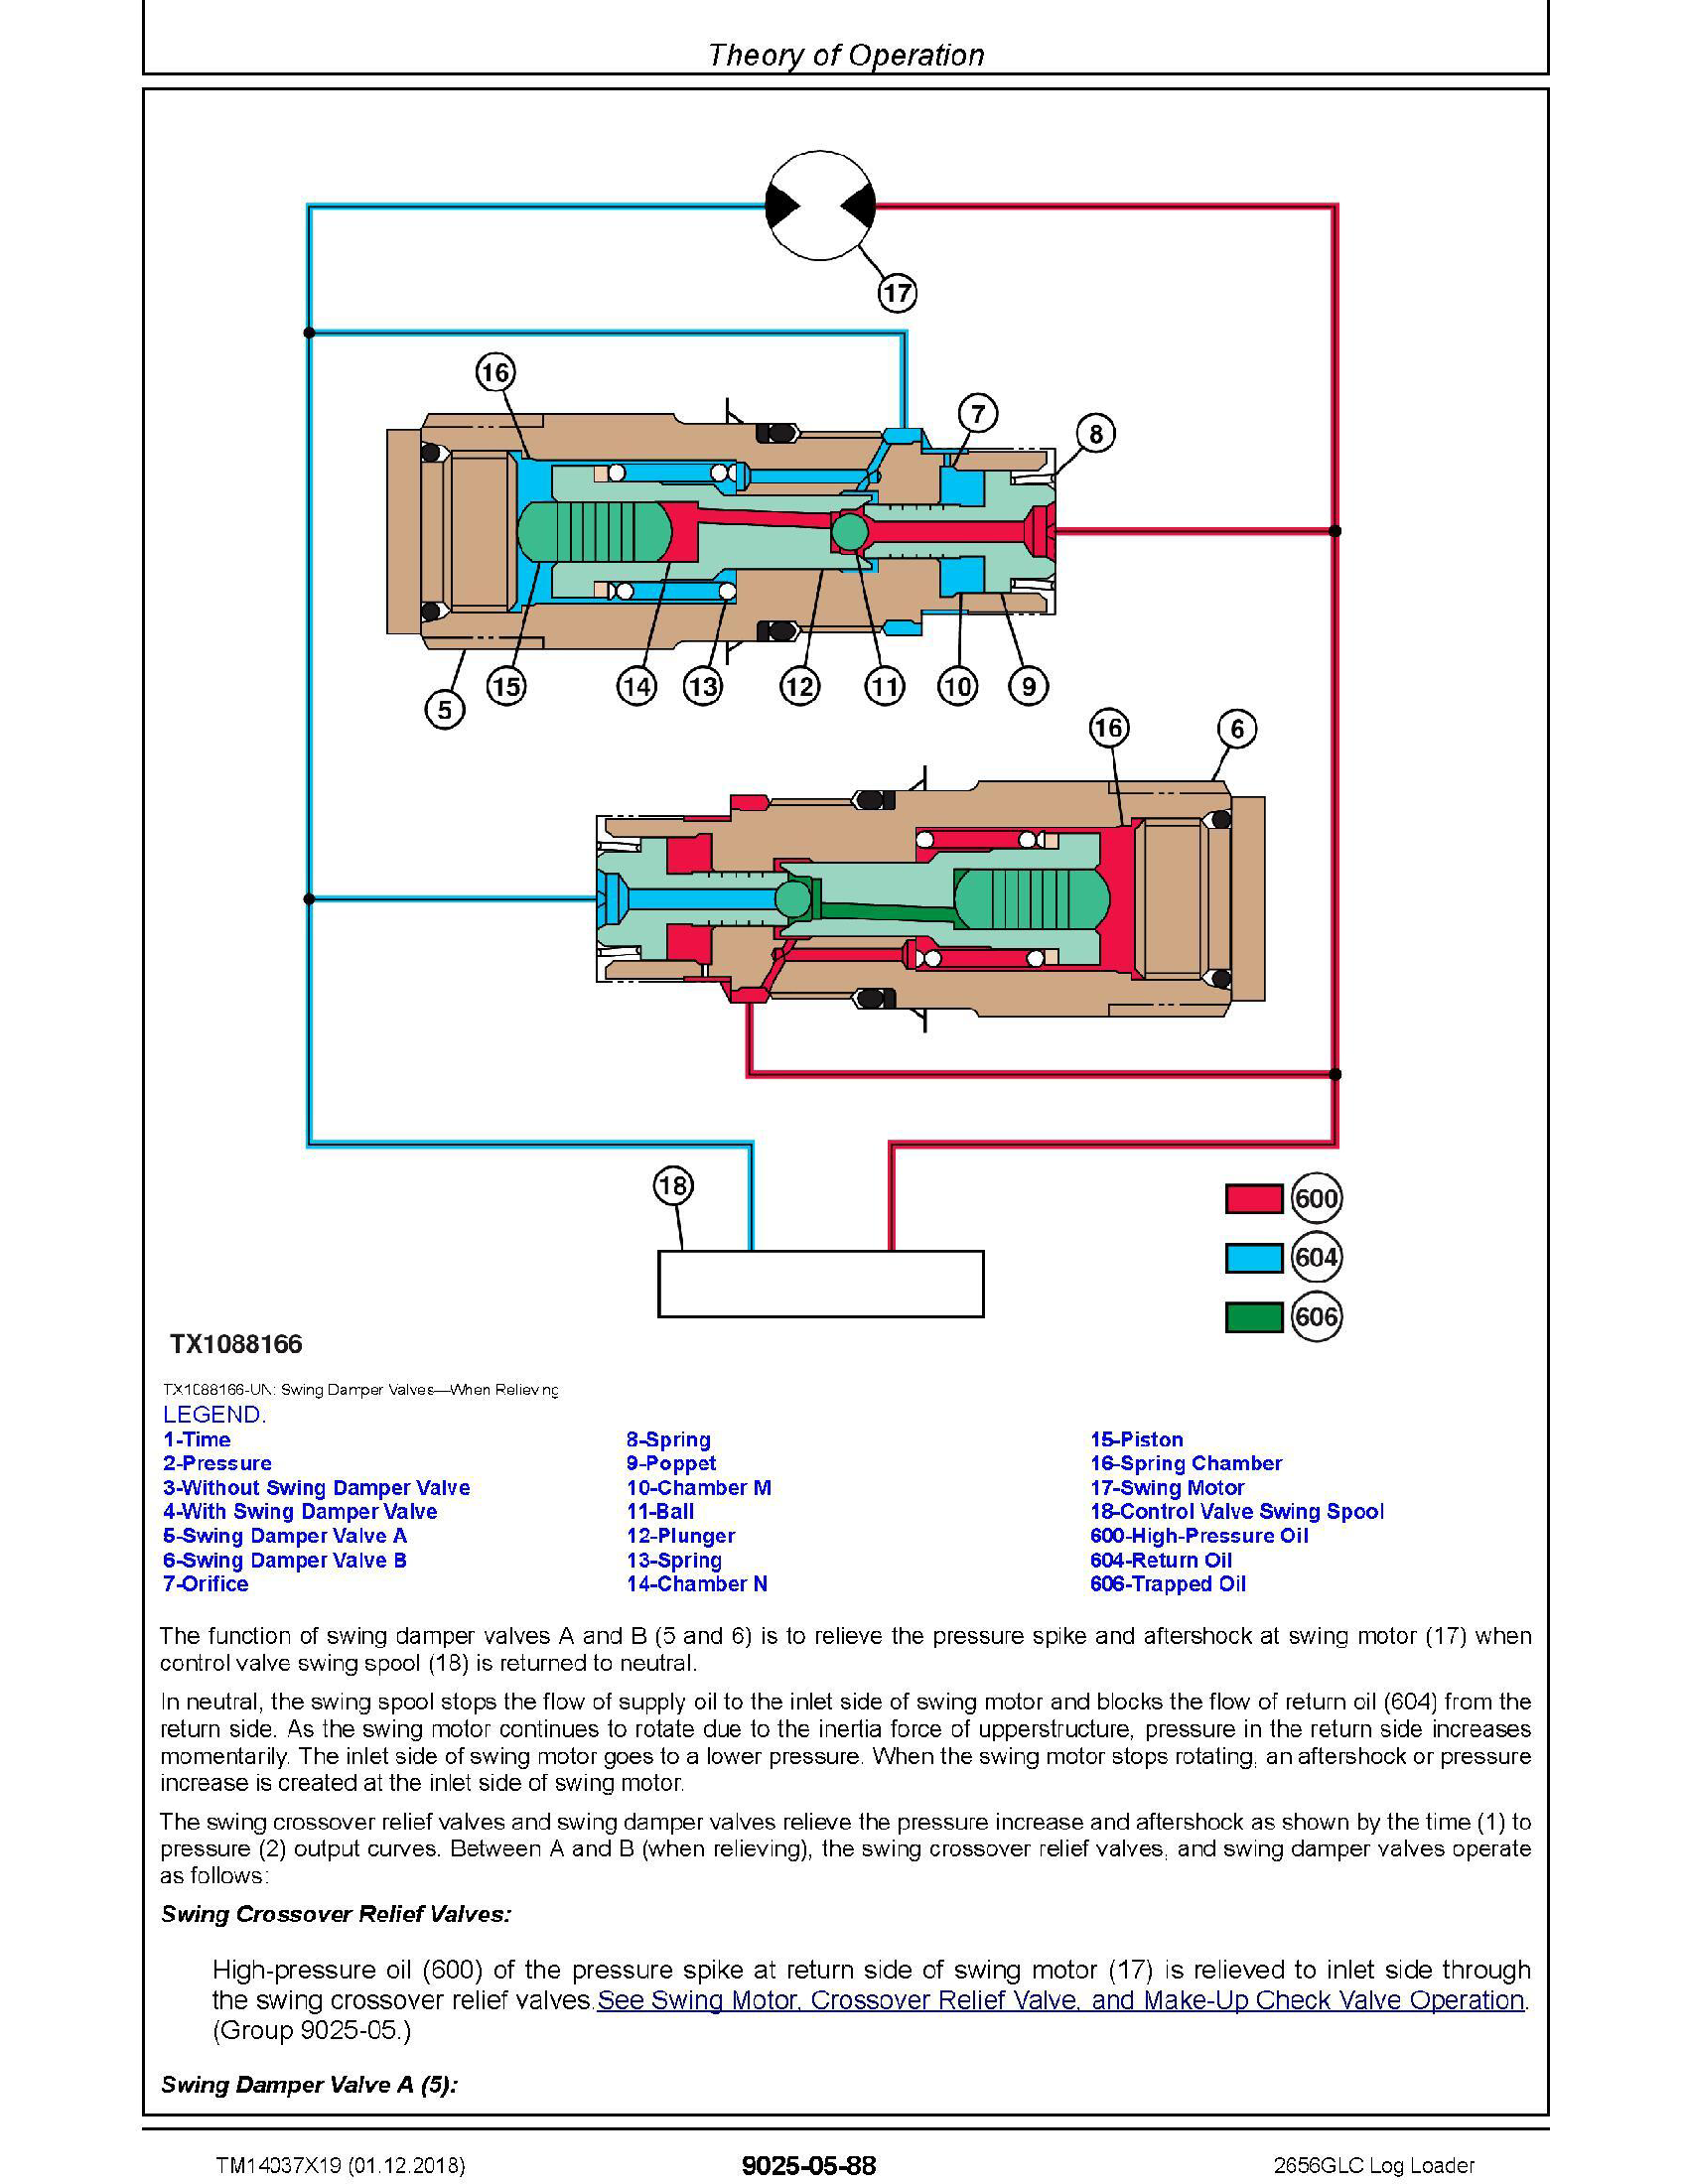 John Deere 1F9250GX manual pdf